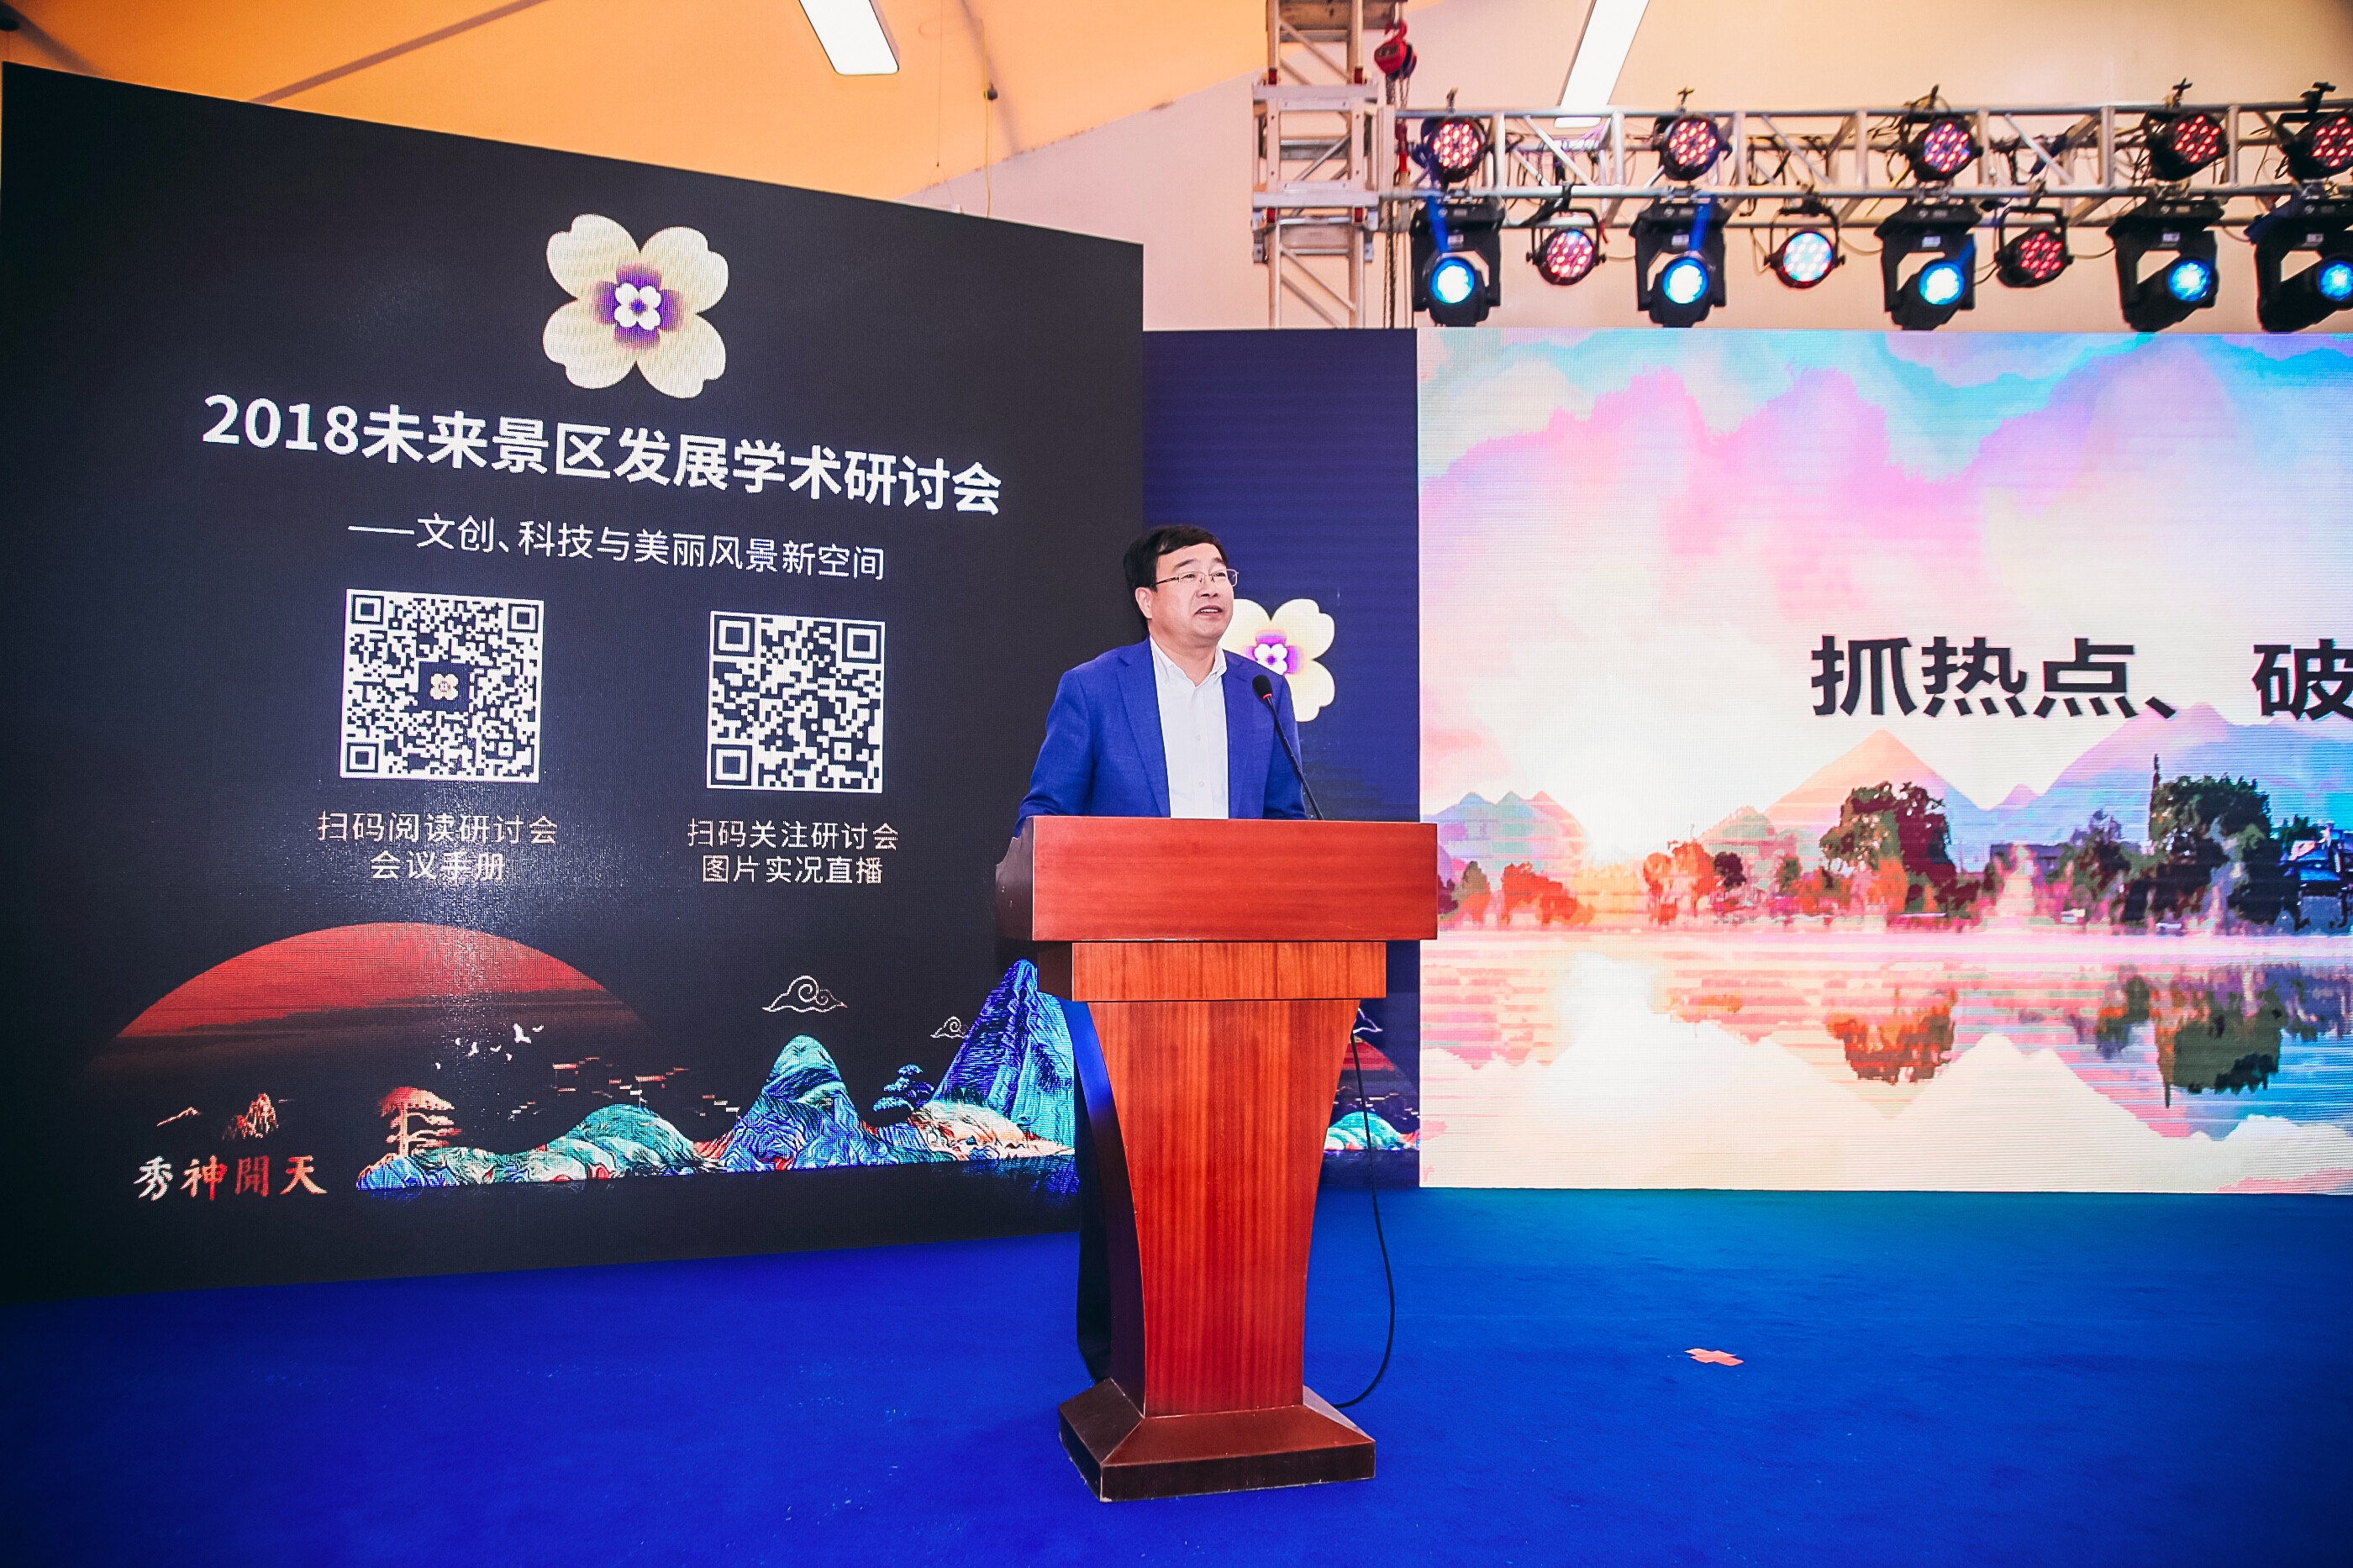 浙江省旅游局党组副书记、副局长傅玮：“抓热点，破难点，创亮点”  浙江在未来景区的探索和实践